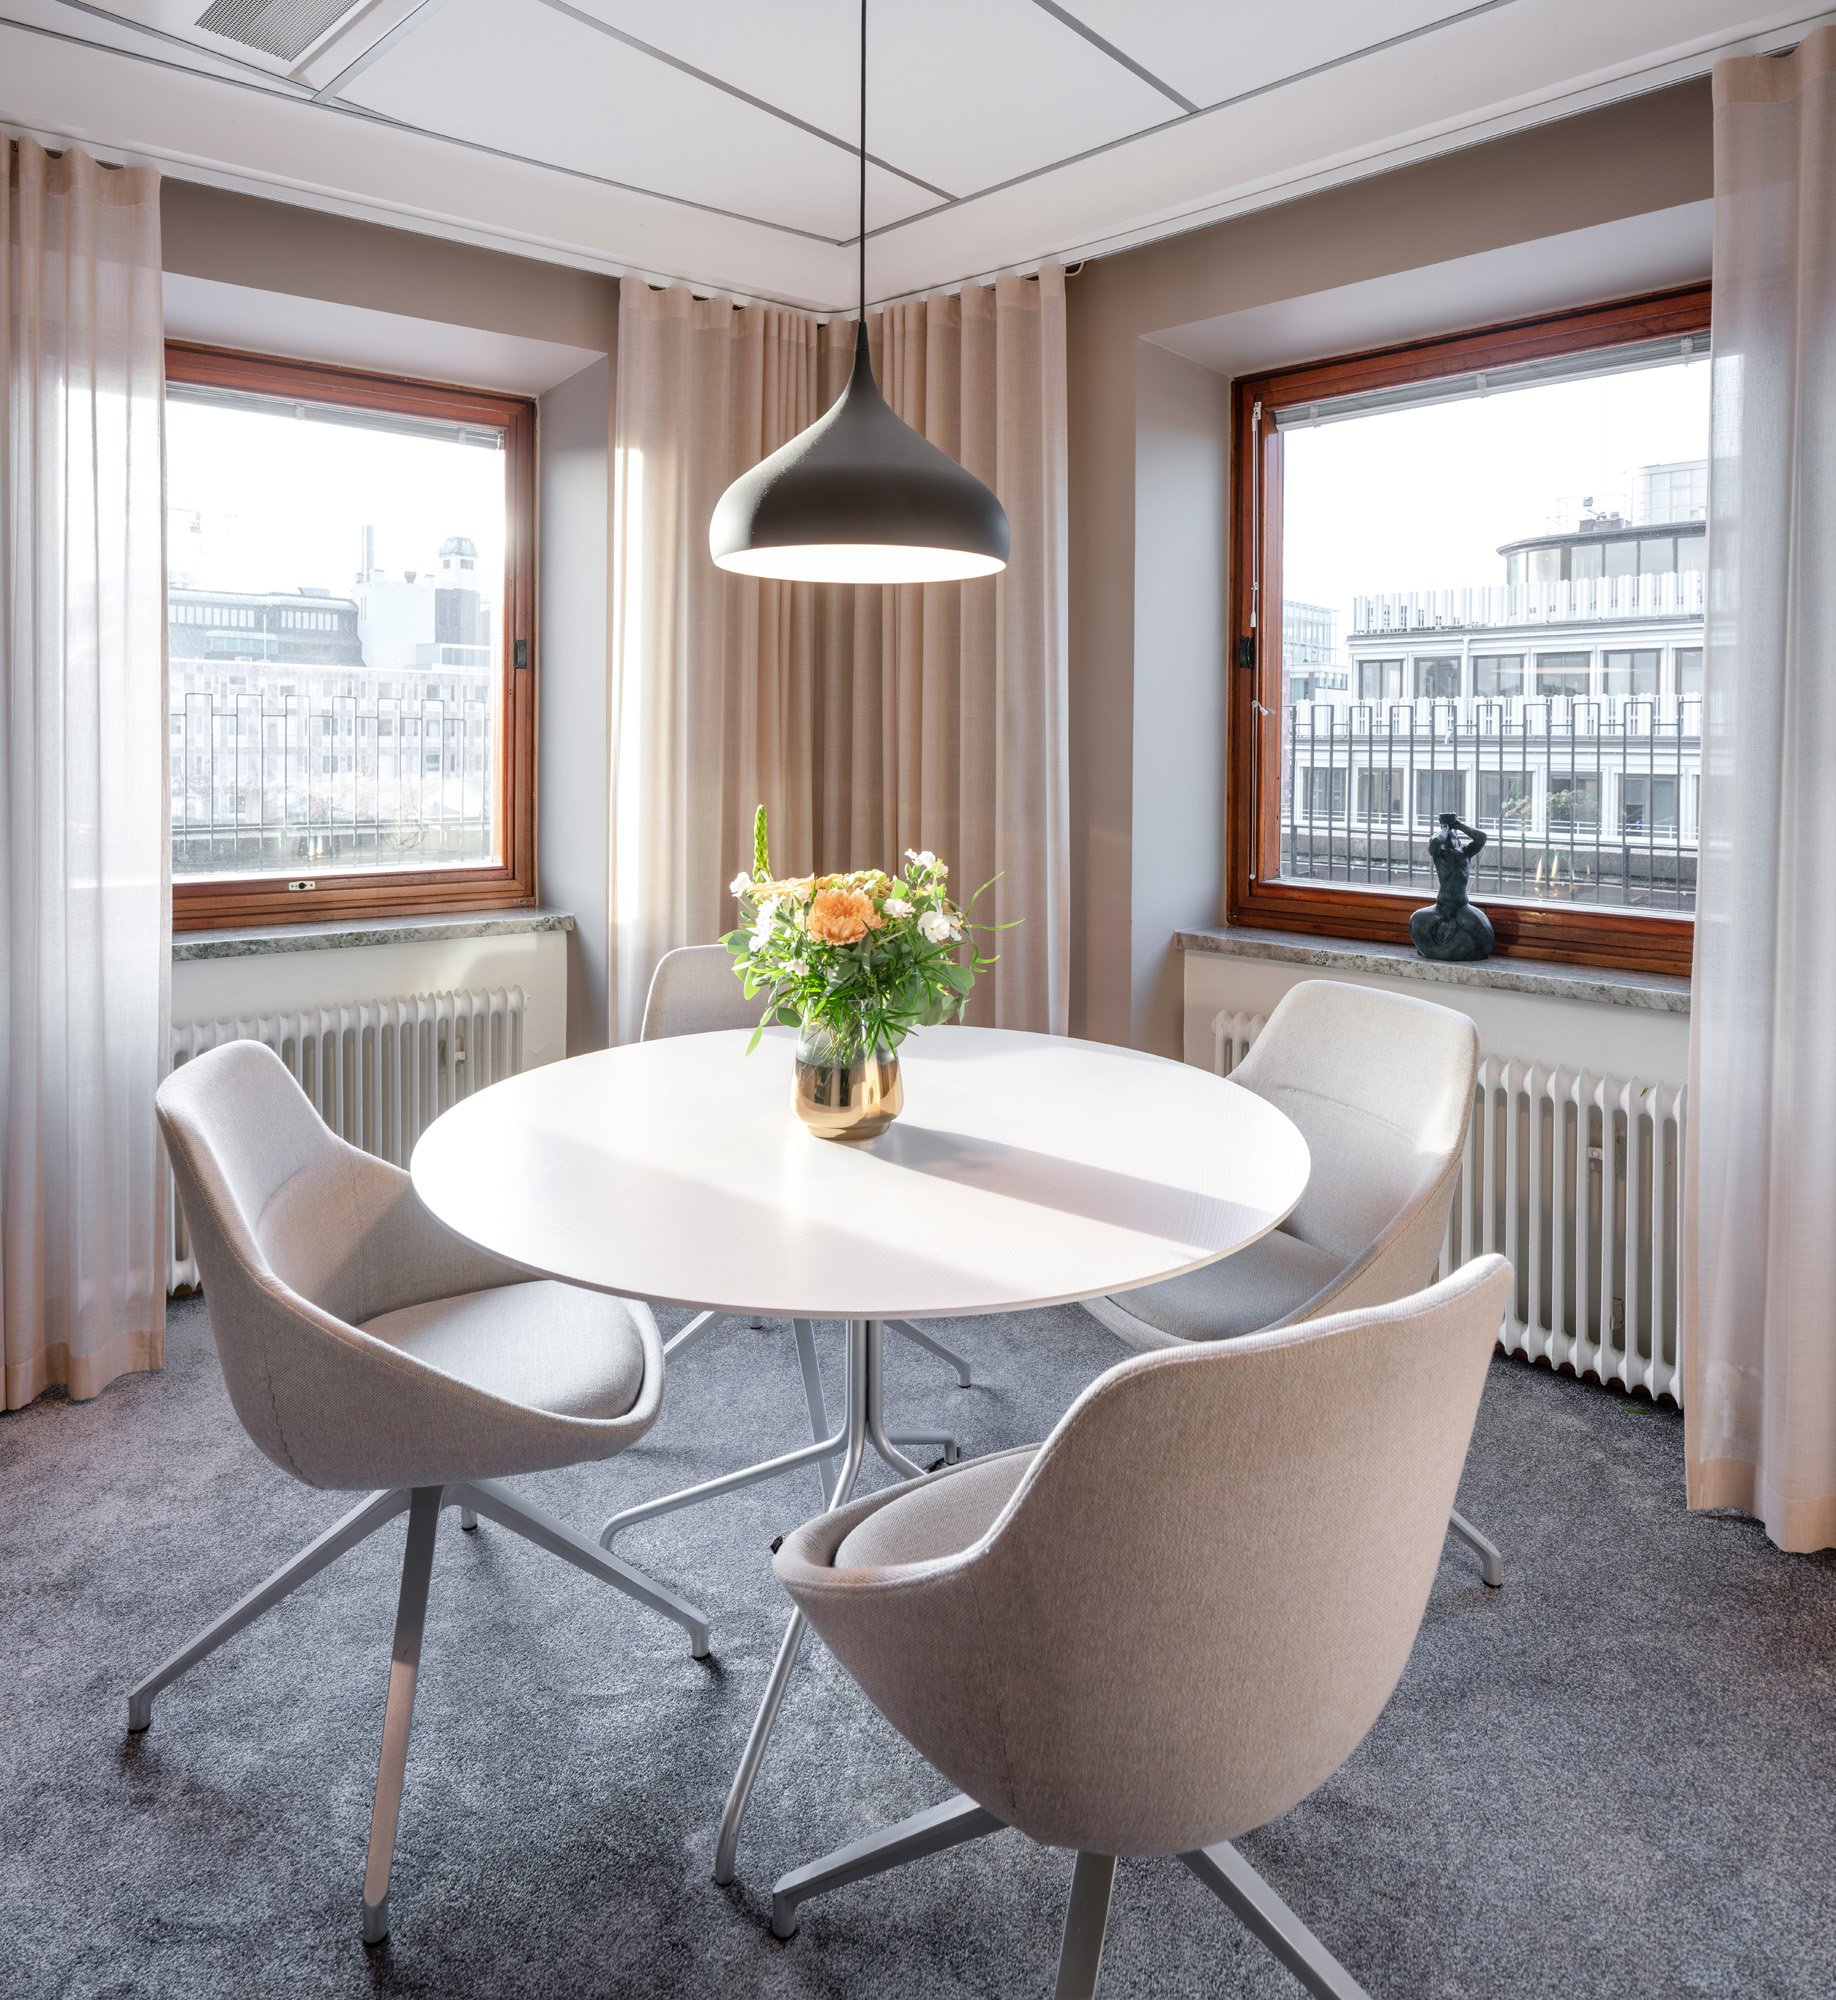 图片[5]|私募股权公司办公室——斯德哥尔摩|ART-Arrakis | 建筑室内设计的创新与灵感